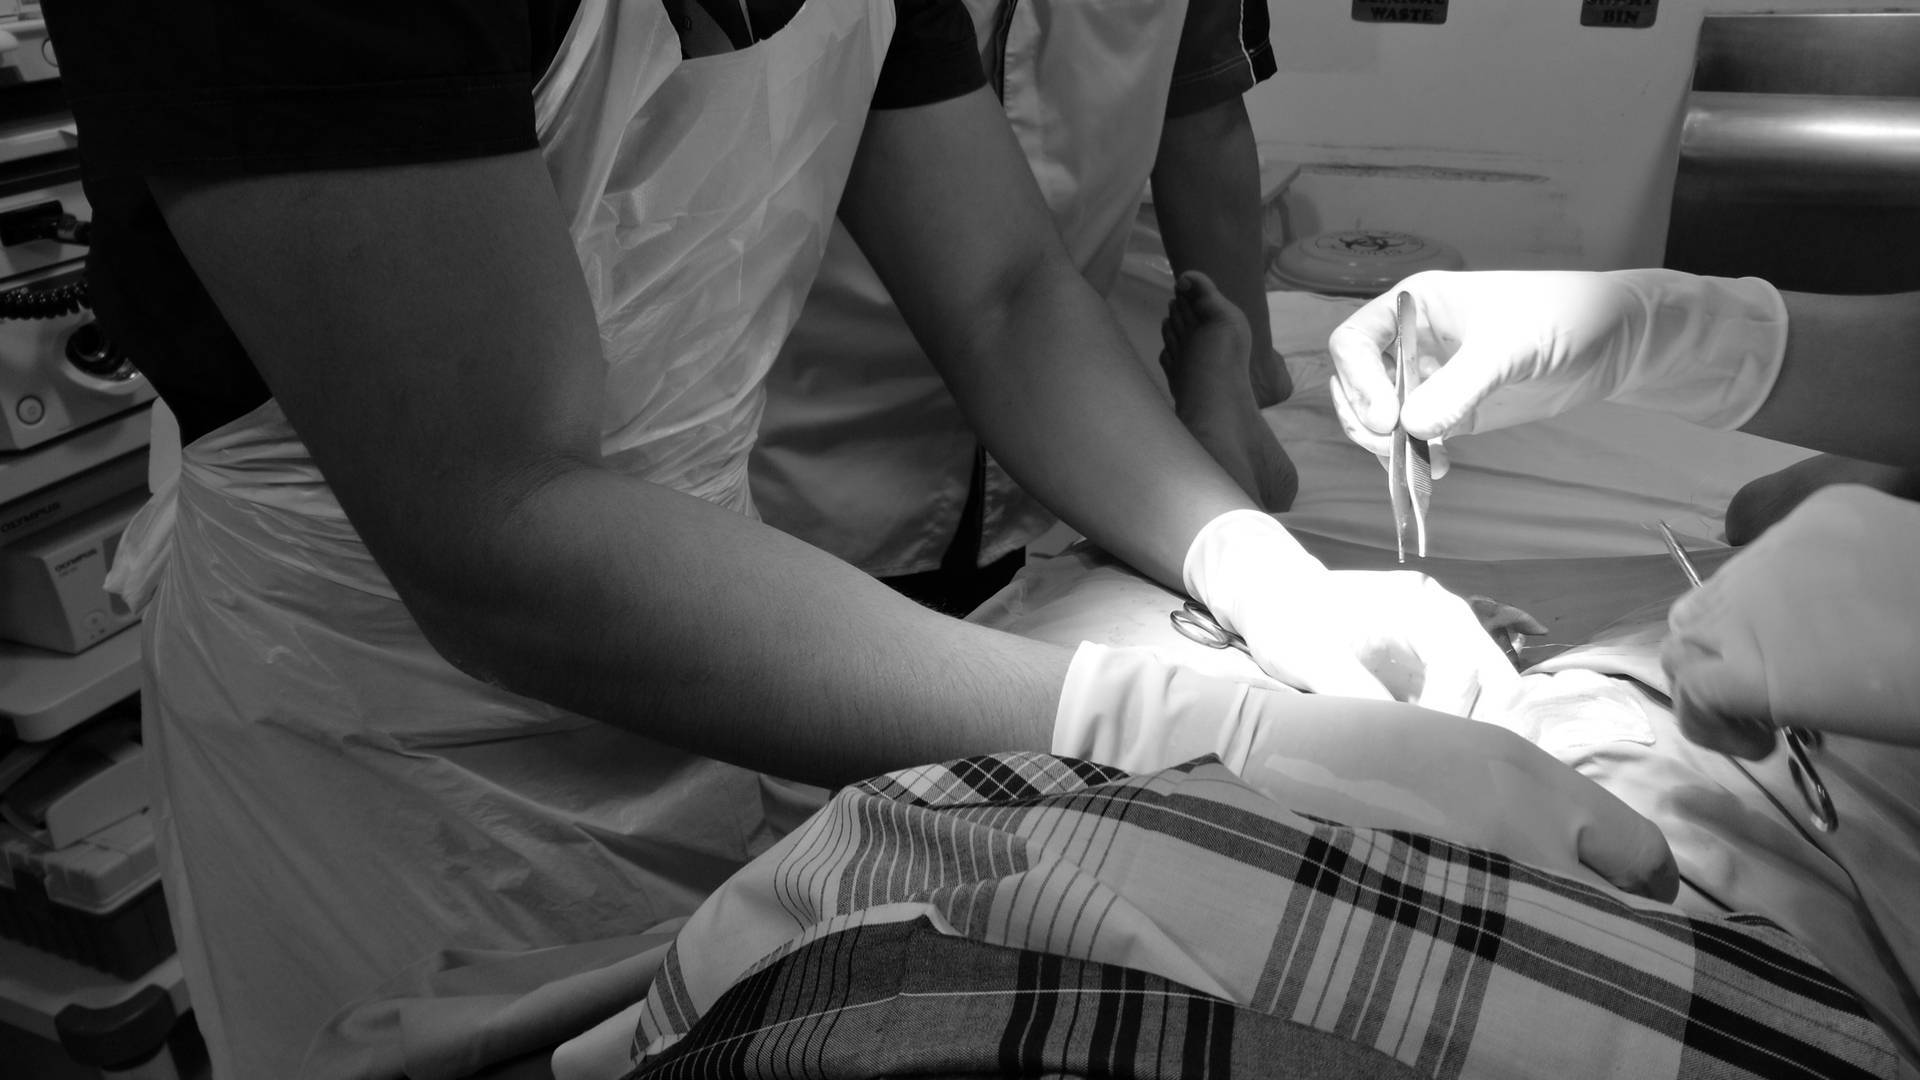 Старые и новые методики обрезания крайней плоти - неомед 249-0-249